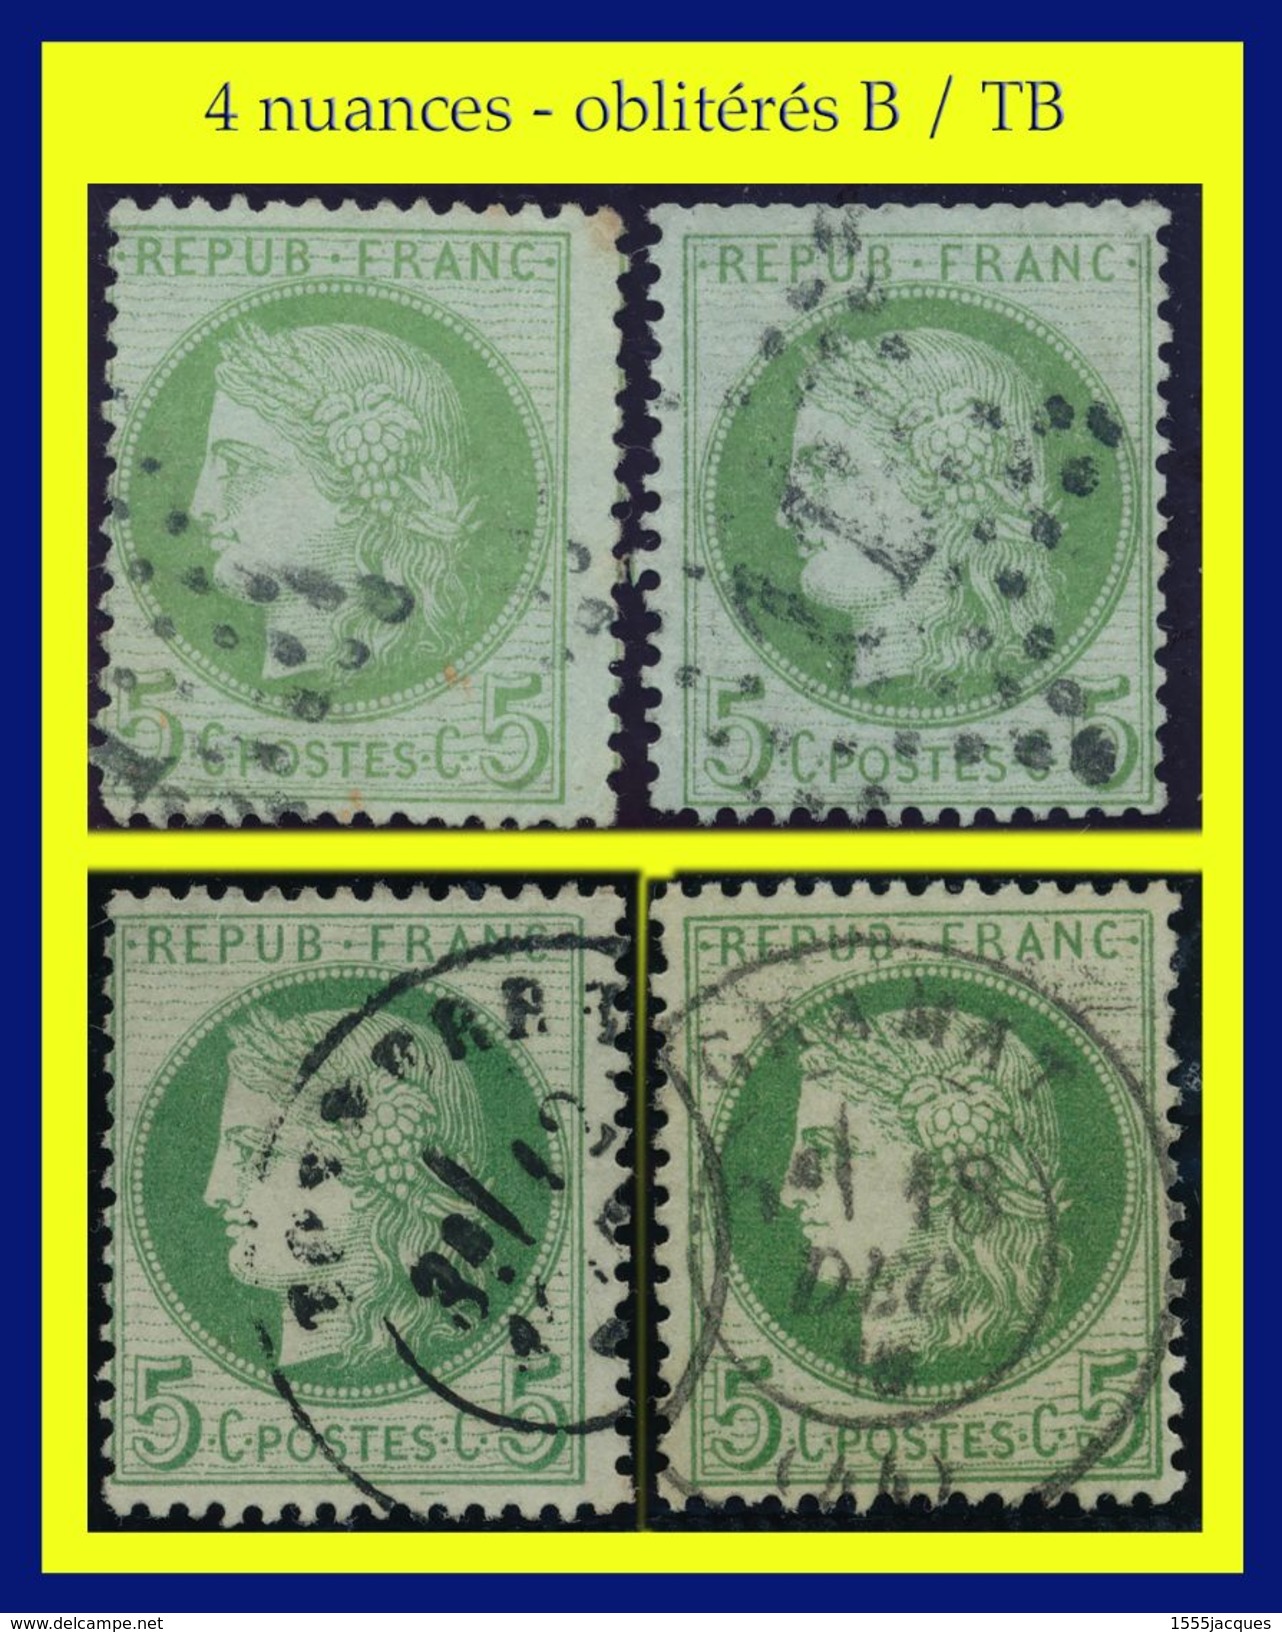 N° 53 CÉRÈS IIIe RÉPUBLIQUE 1872 - 4 NUANCES OBLITÉRÉS B / TB - CACHET DE GRAMAT + ÉTOILE DE PARIS N° 11 - - 1871-1875 Ceres